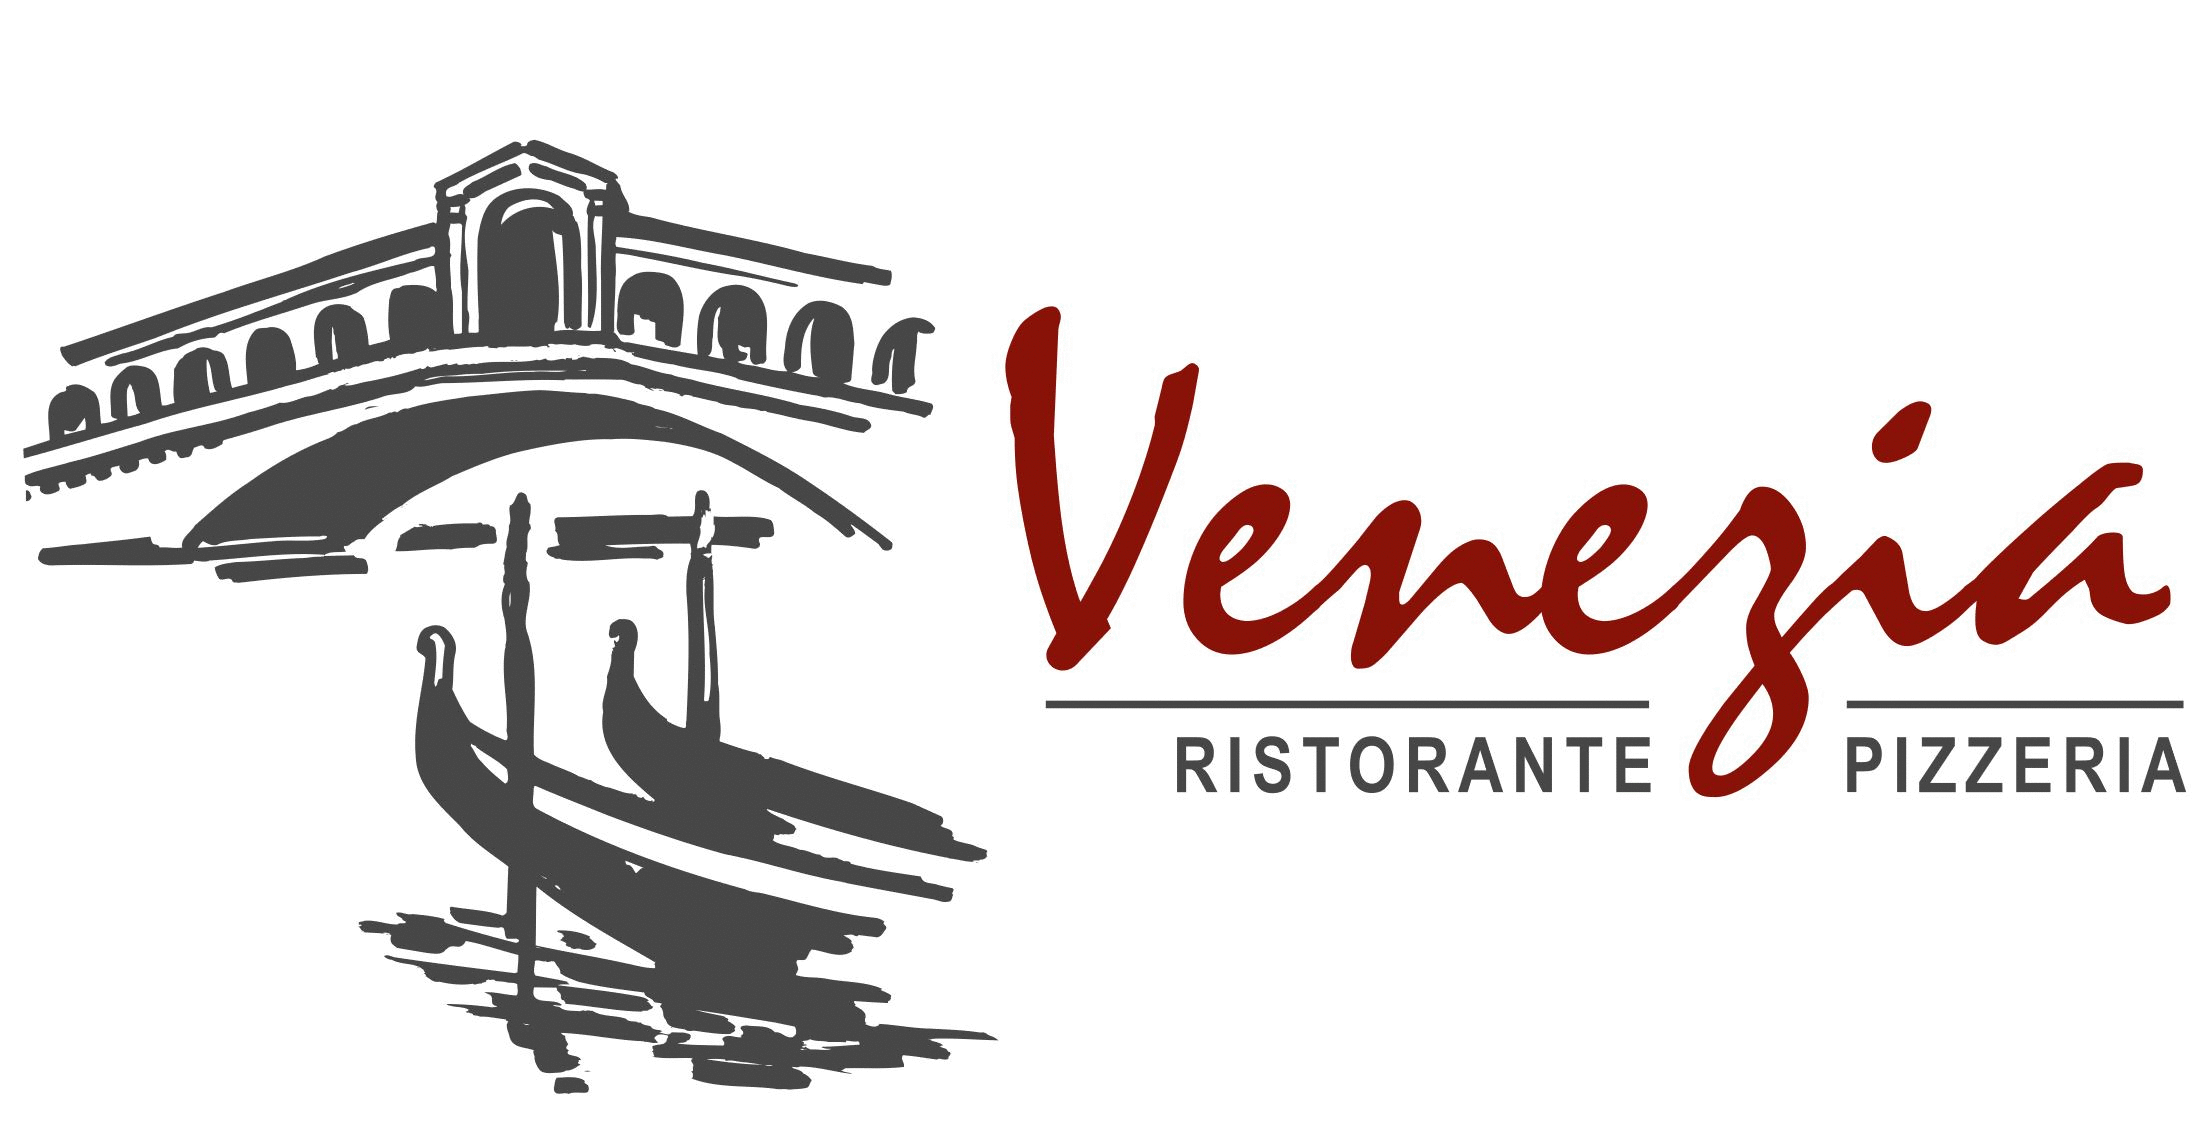 (c) Venezia-gruiten.com